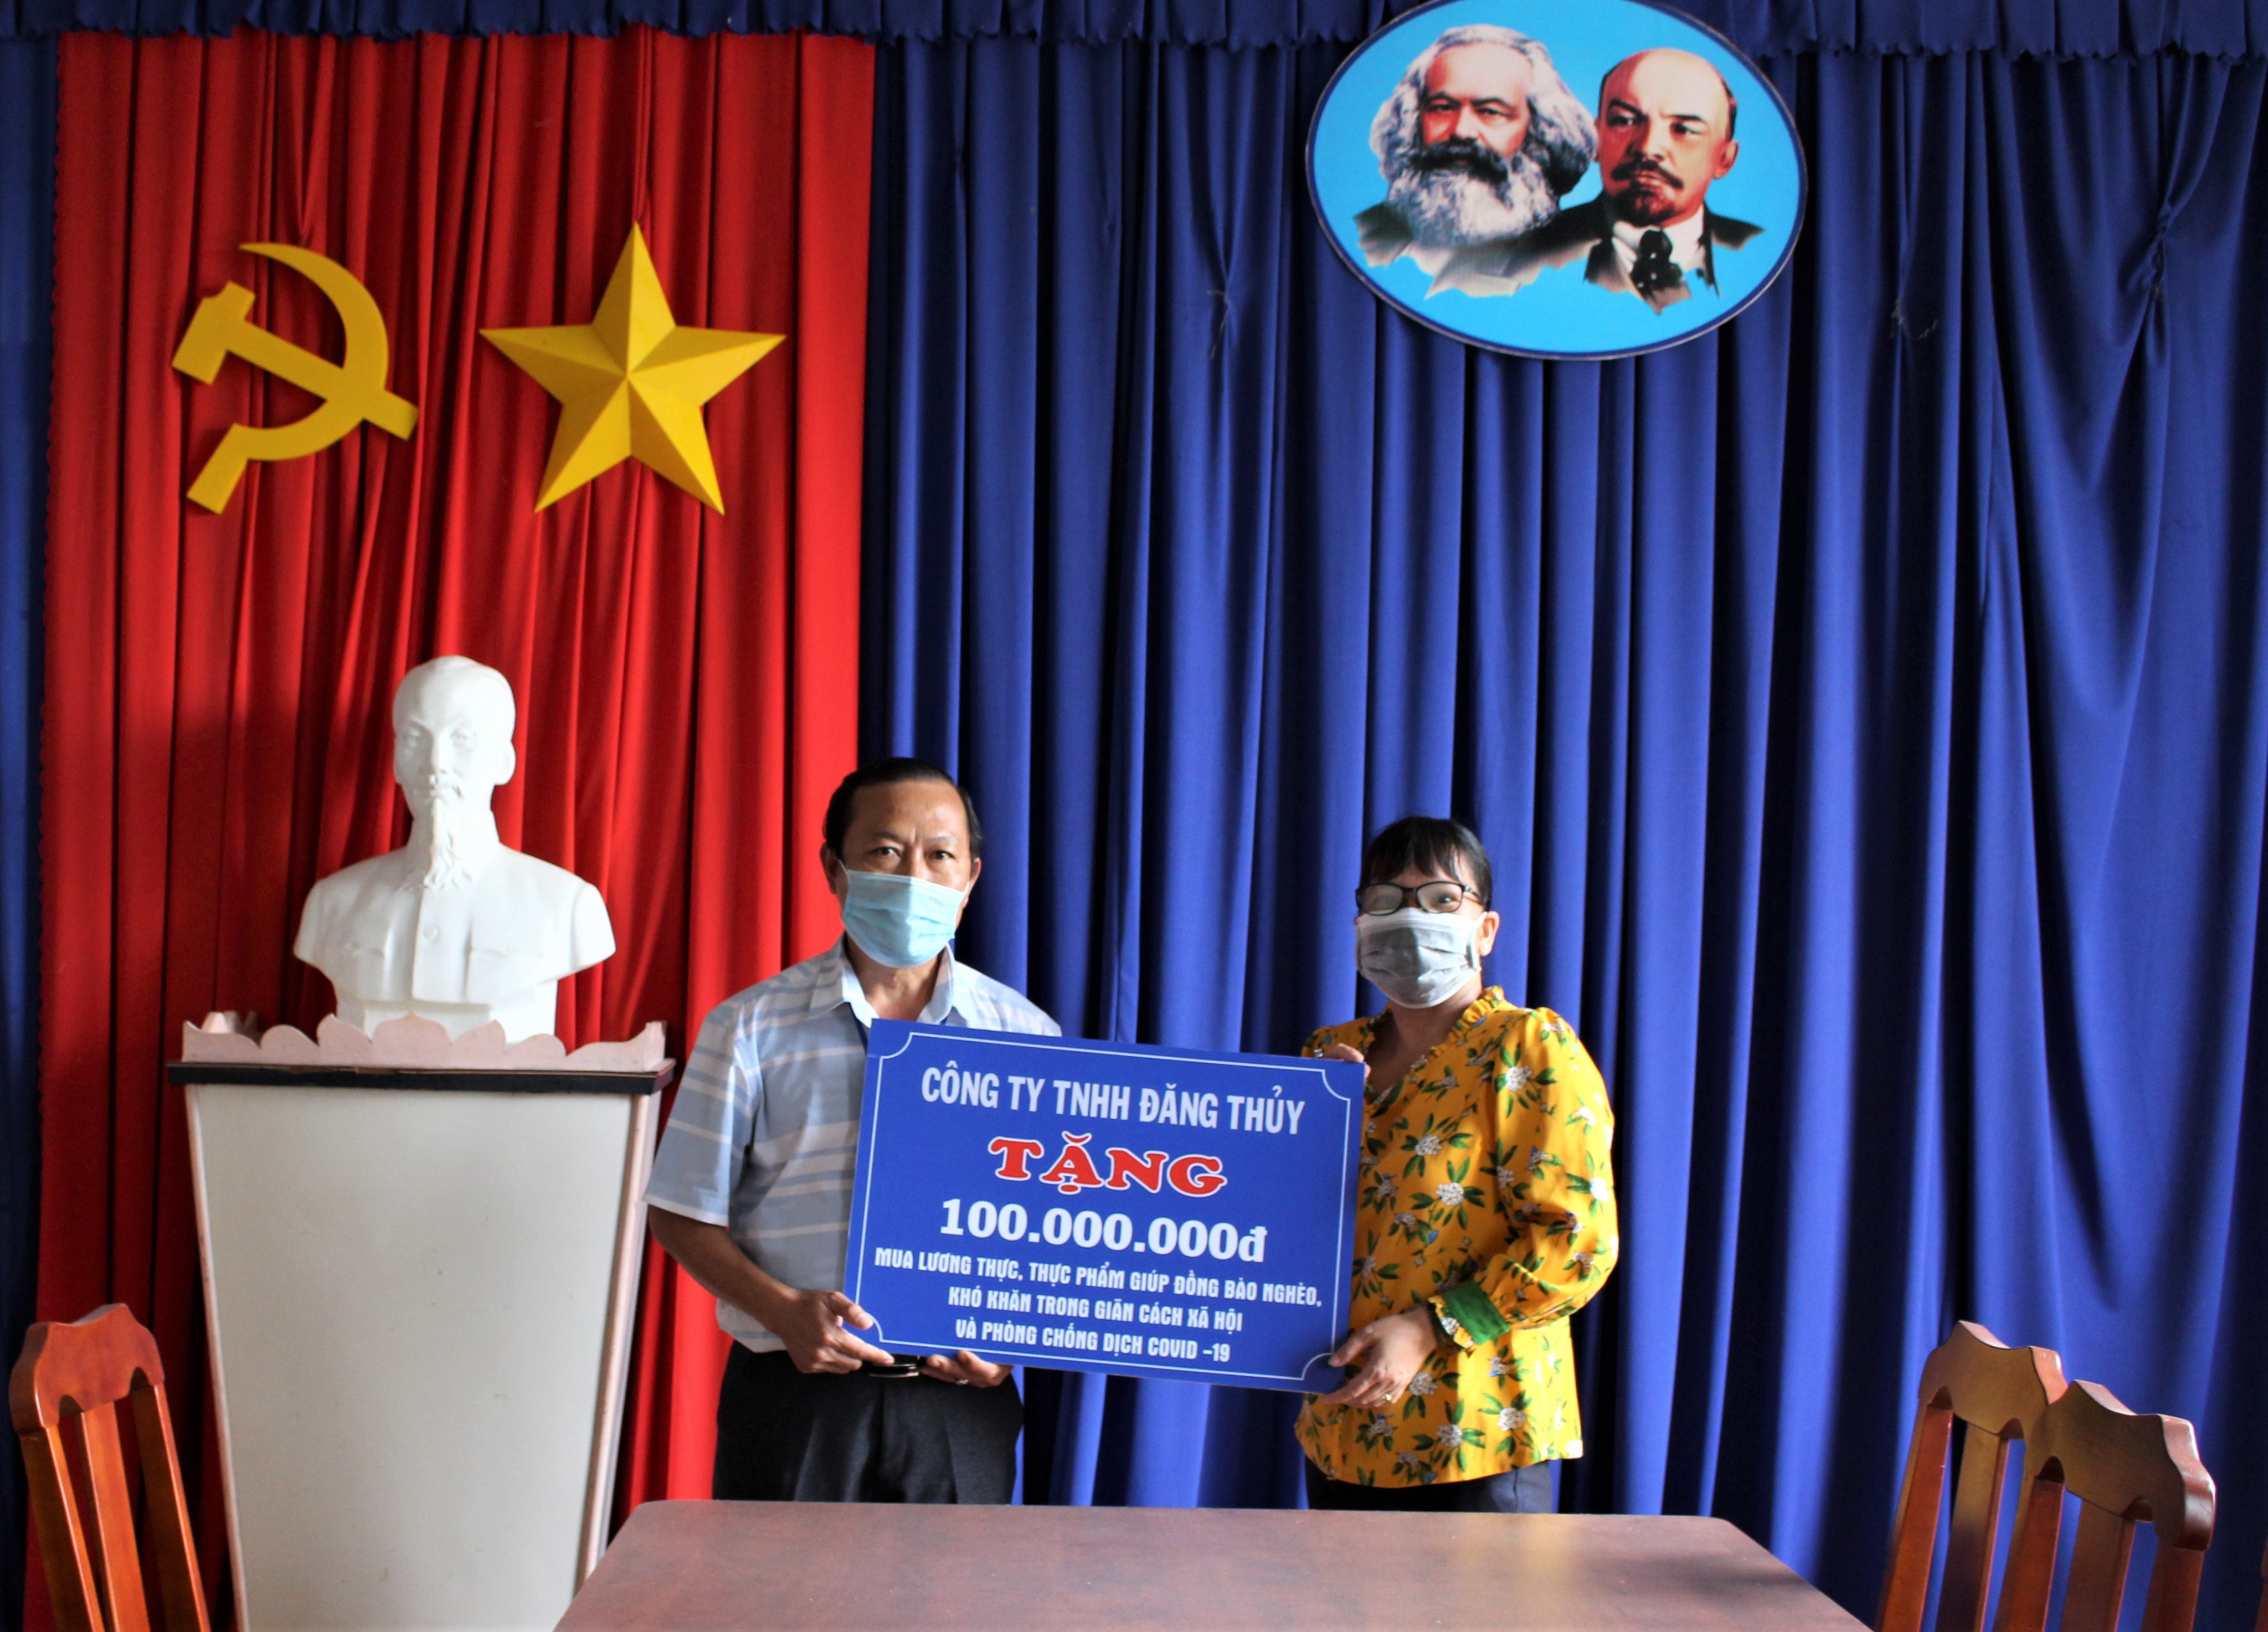 Đại diện Công ty TNHH Đăng Thủy trao Bảng tượng trưng ủng hộ 100 triệu đồng iúp đỡ người khó khăn bị ảnh hưởng bởi dịch COVID-19 ở huyện Châu Đức